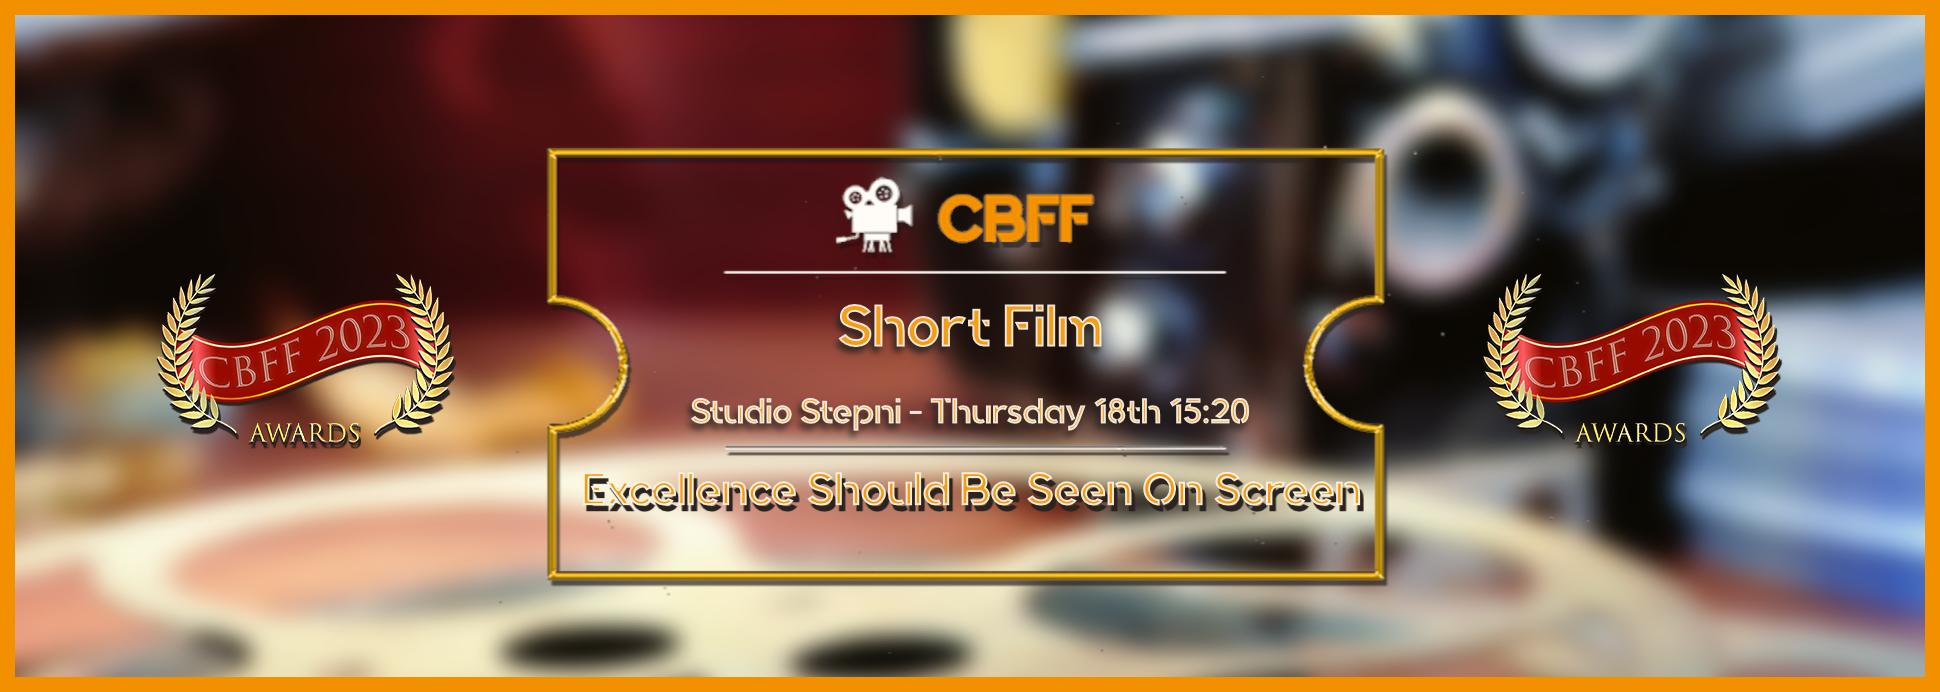 Studio Stepni - Short Film 18th 15:20